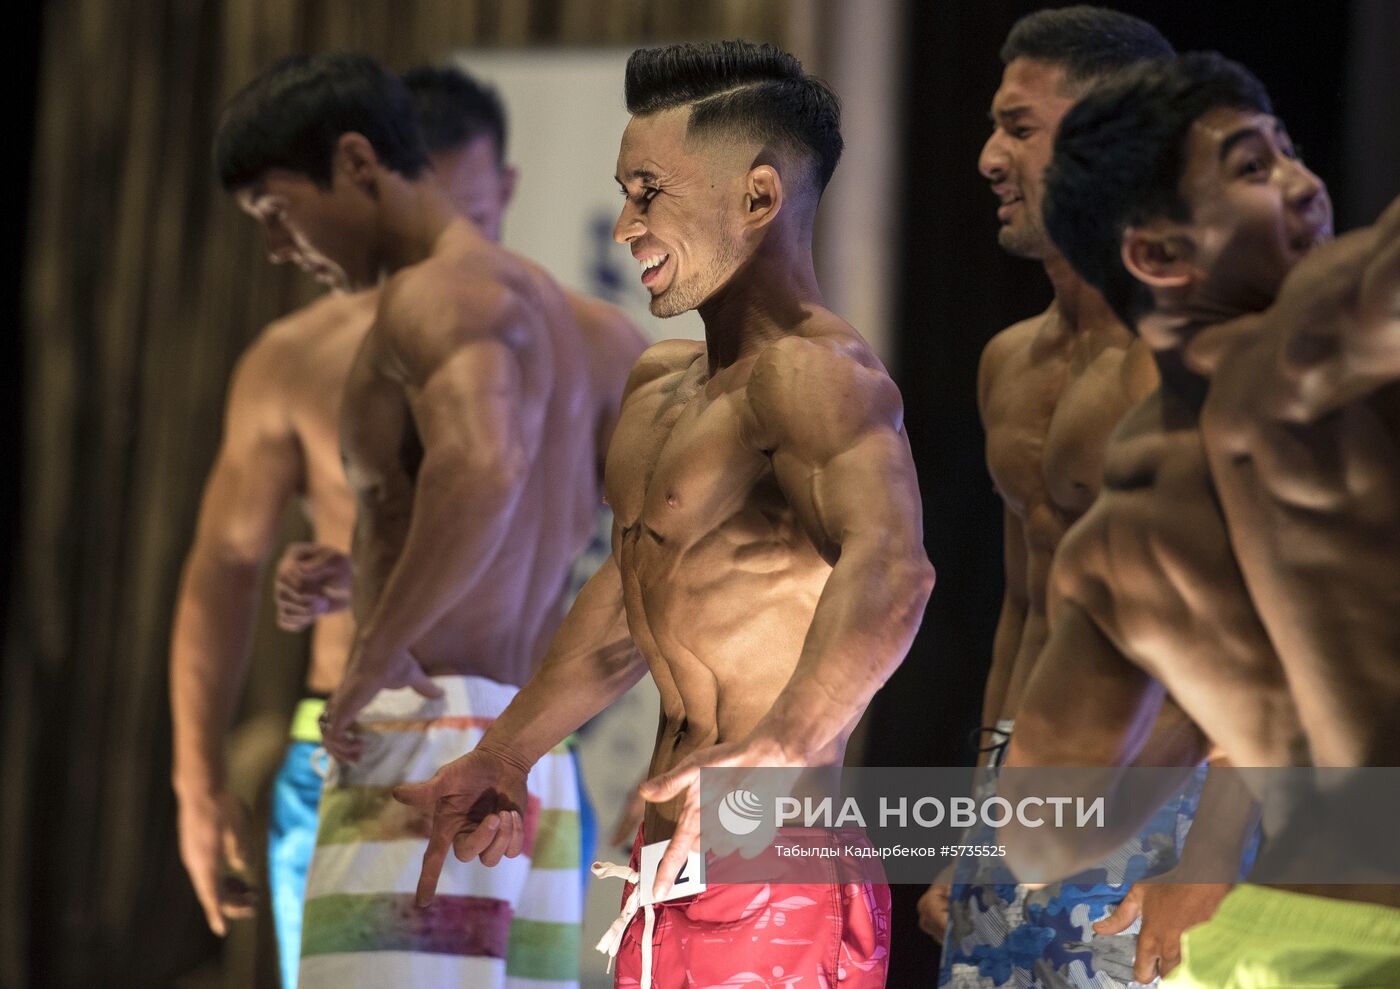 Чемпионат по бодибилдингу в Киргизии